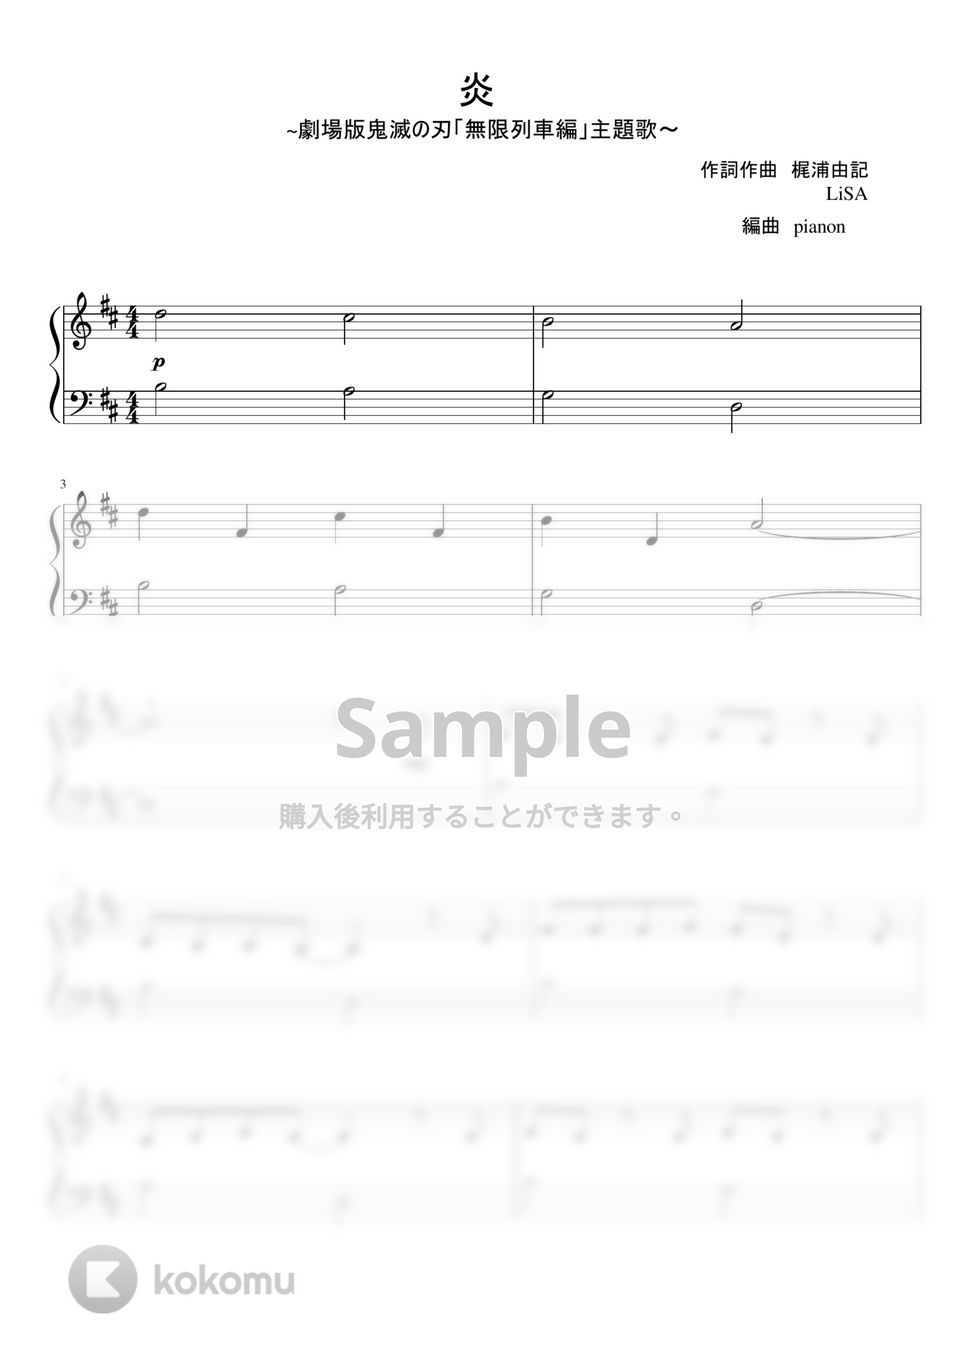 LiSA - 炎 (ピアノ超初級) by pianon